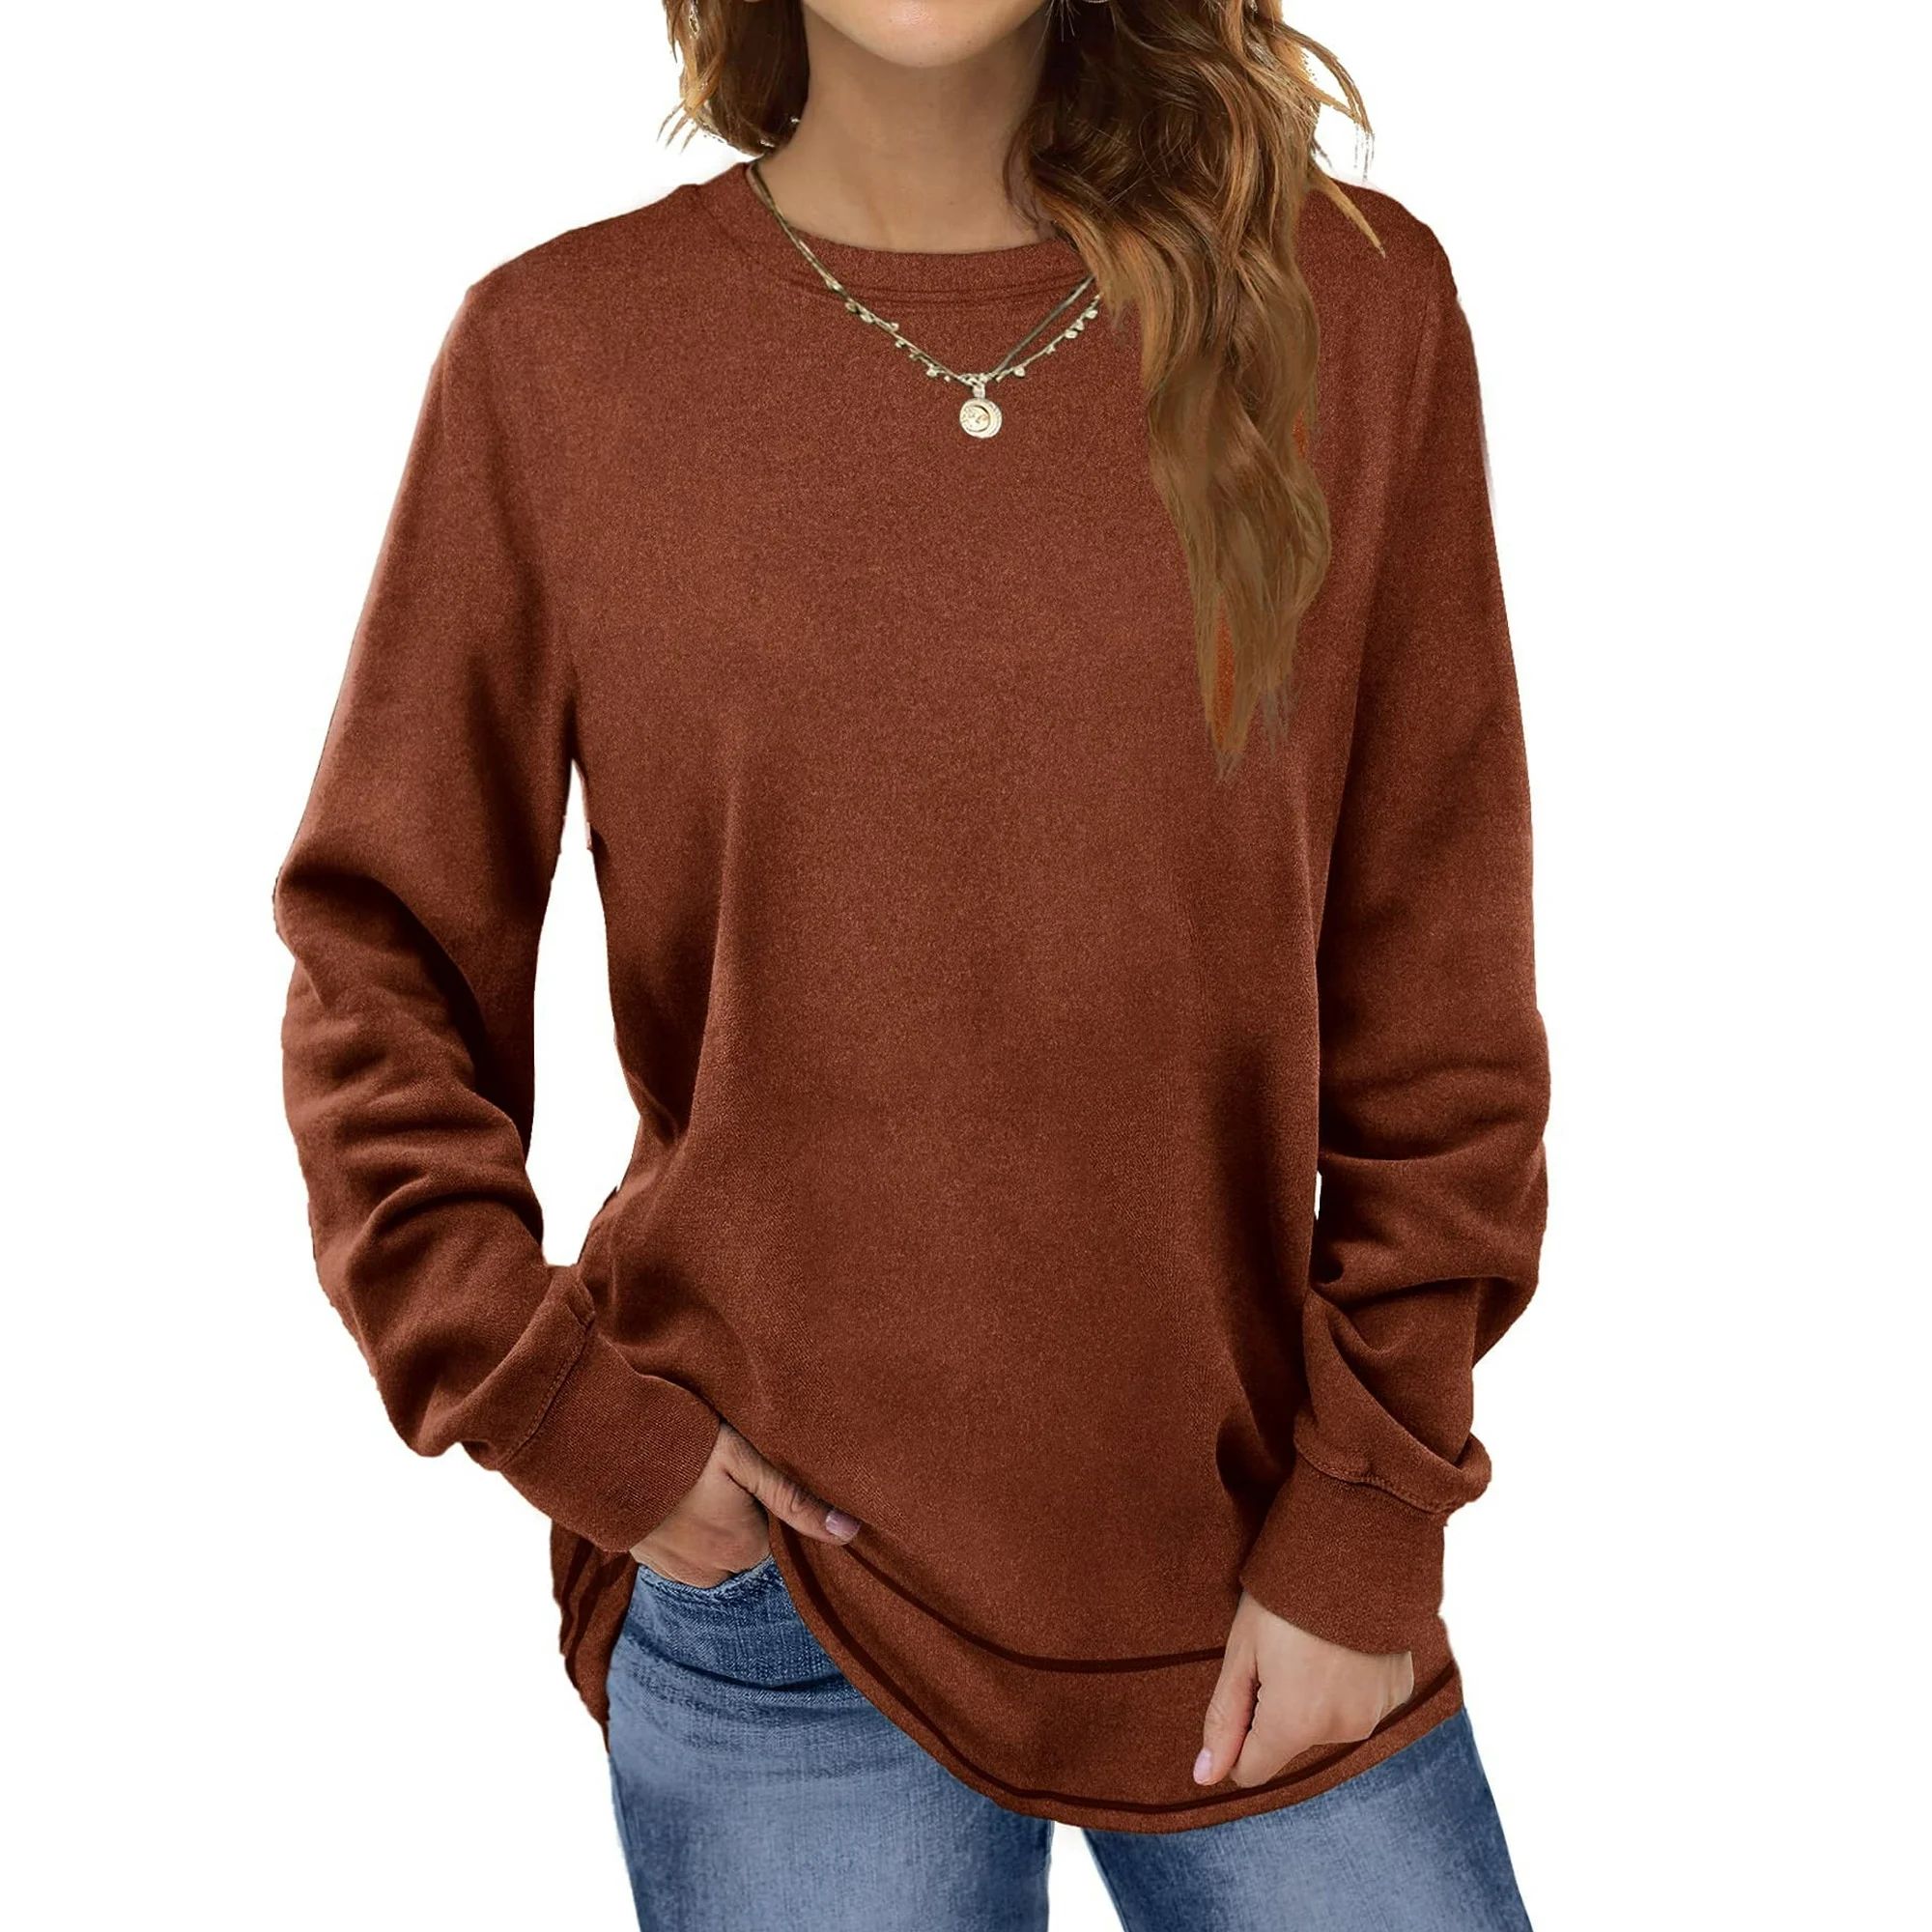 Fantaslook Sweatshirts for Women Crewneck Casual Long Sleeve Shirts Tunic Tops | Walmart (US)